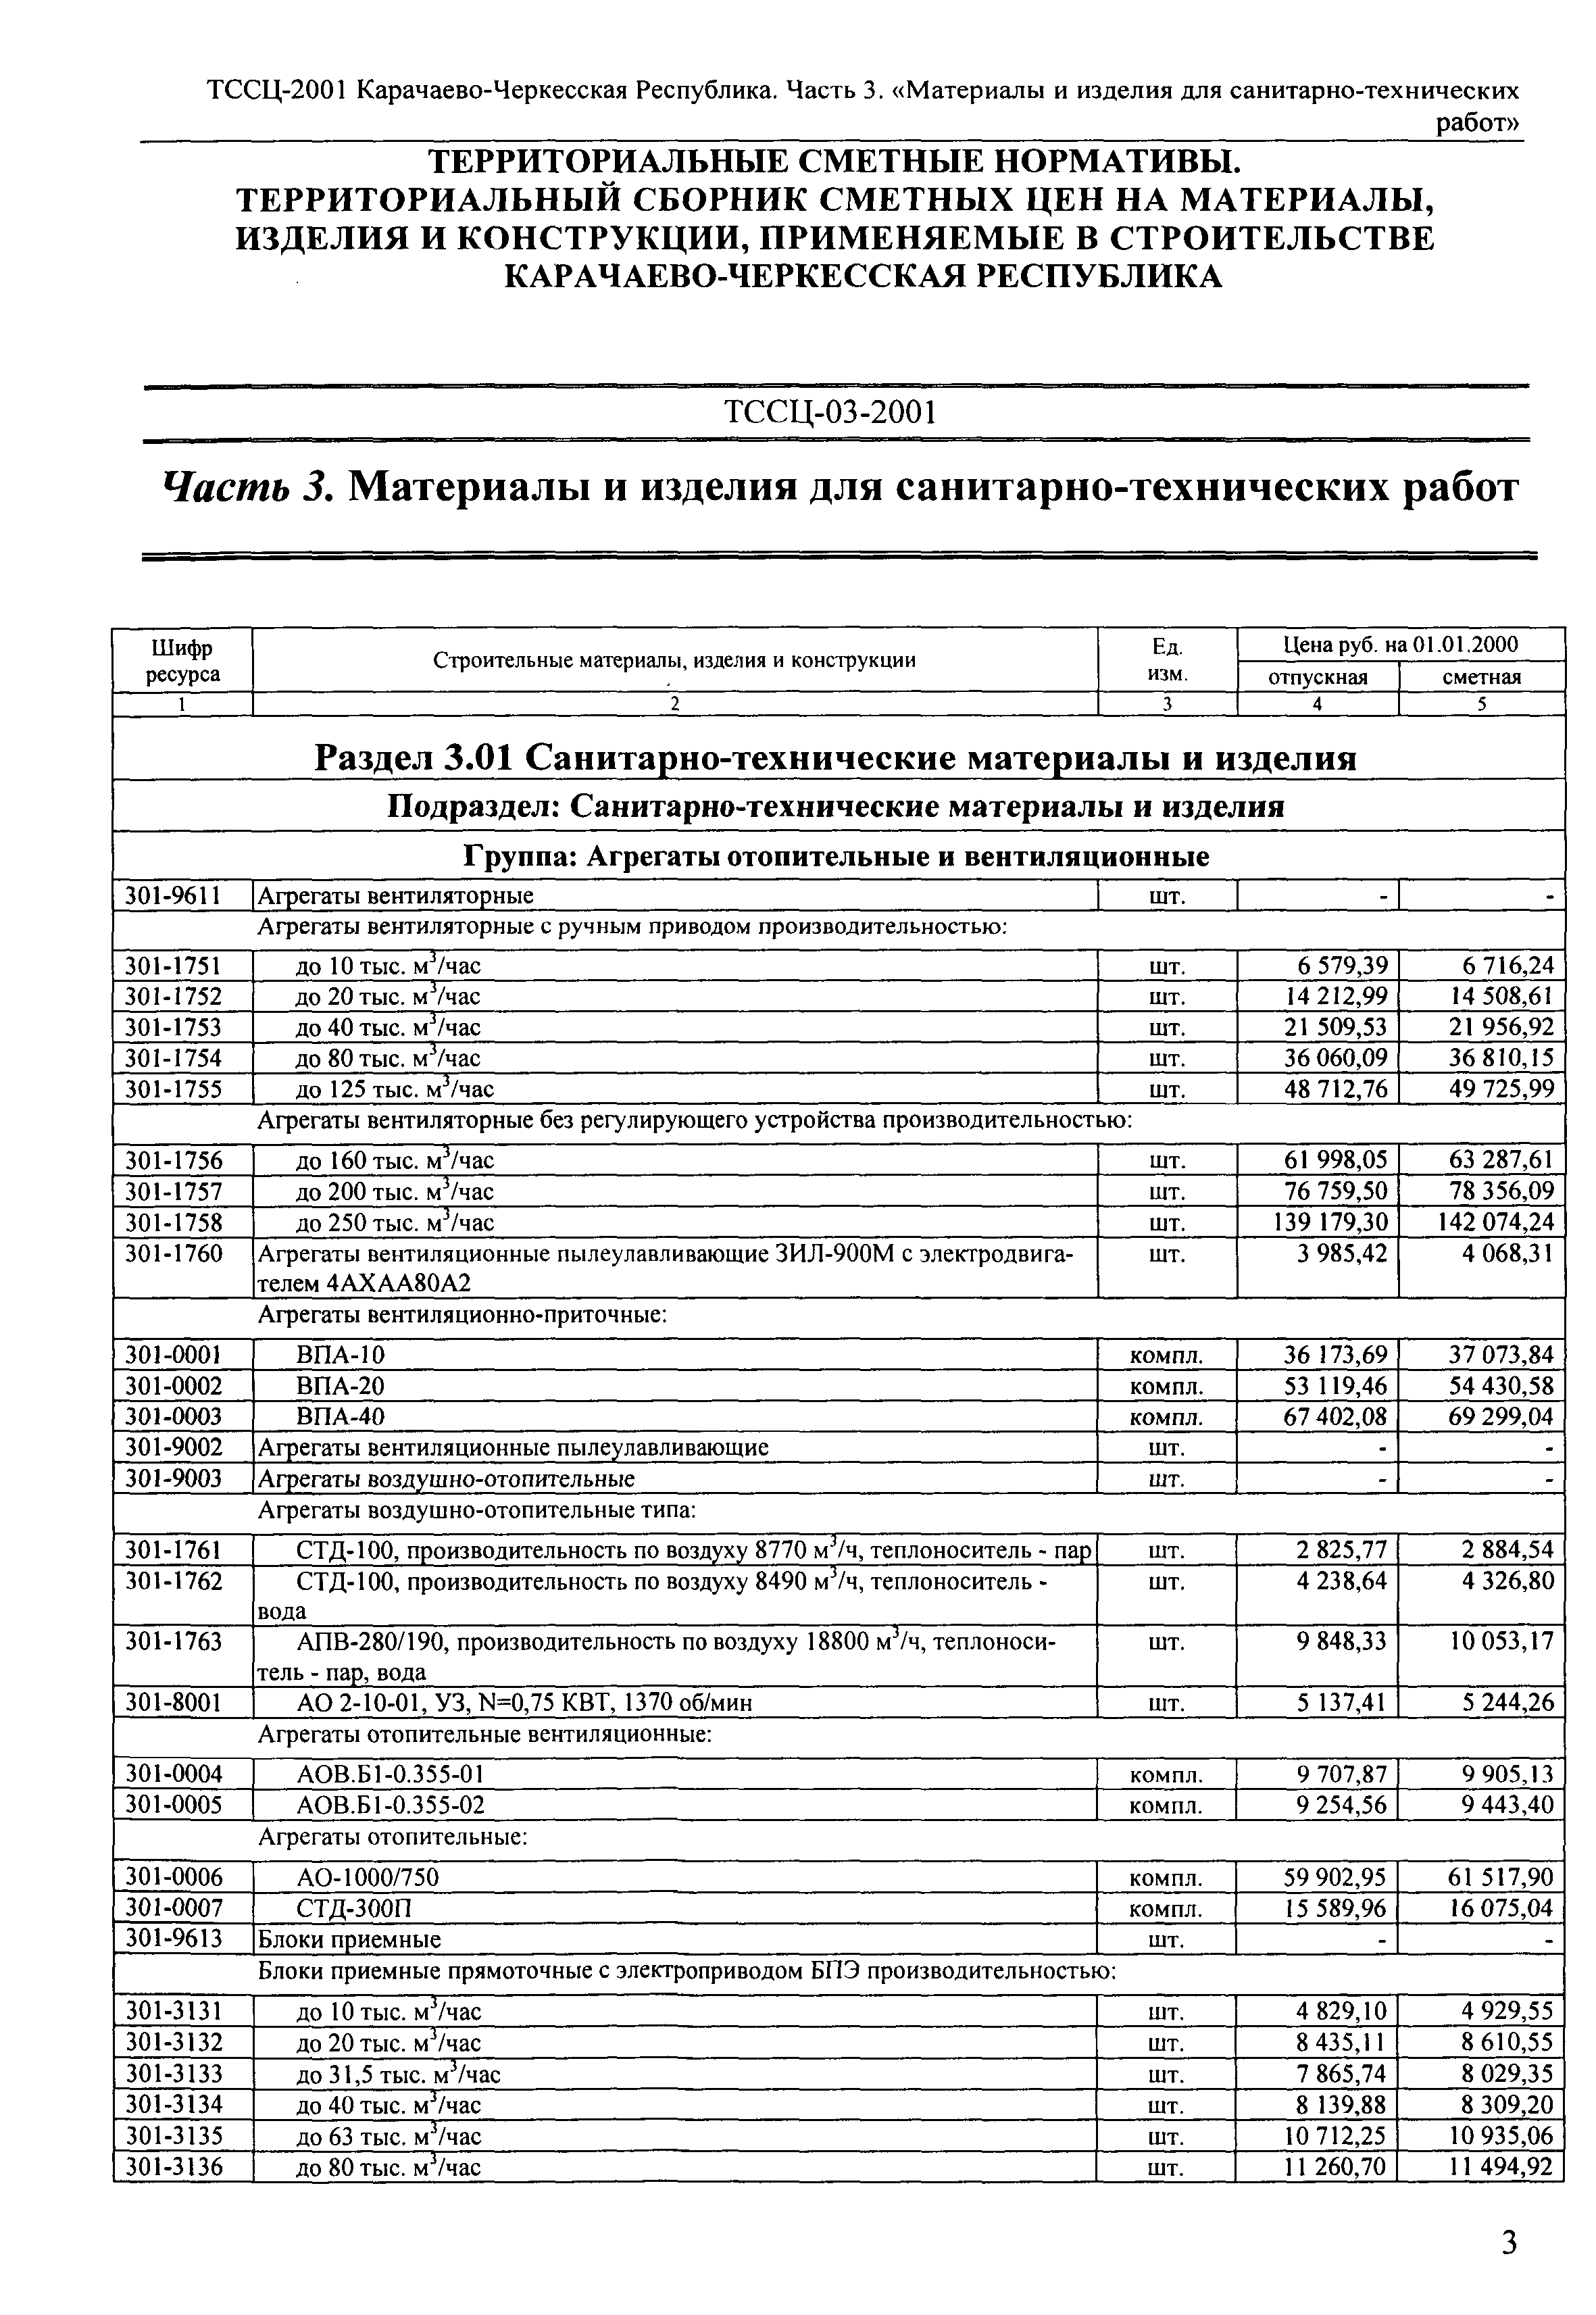 ТССЦ Карачаево-Черкесская Республика 03-2001